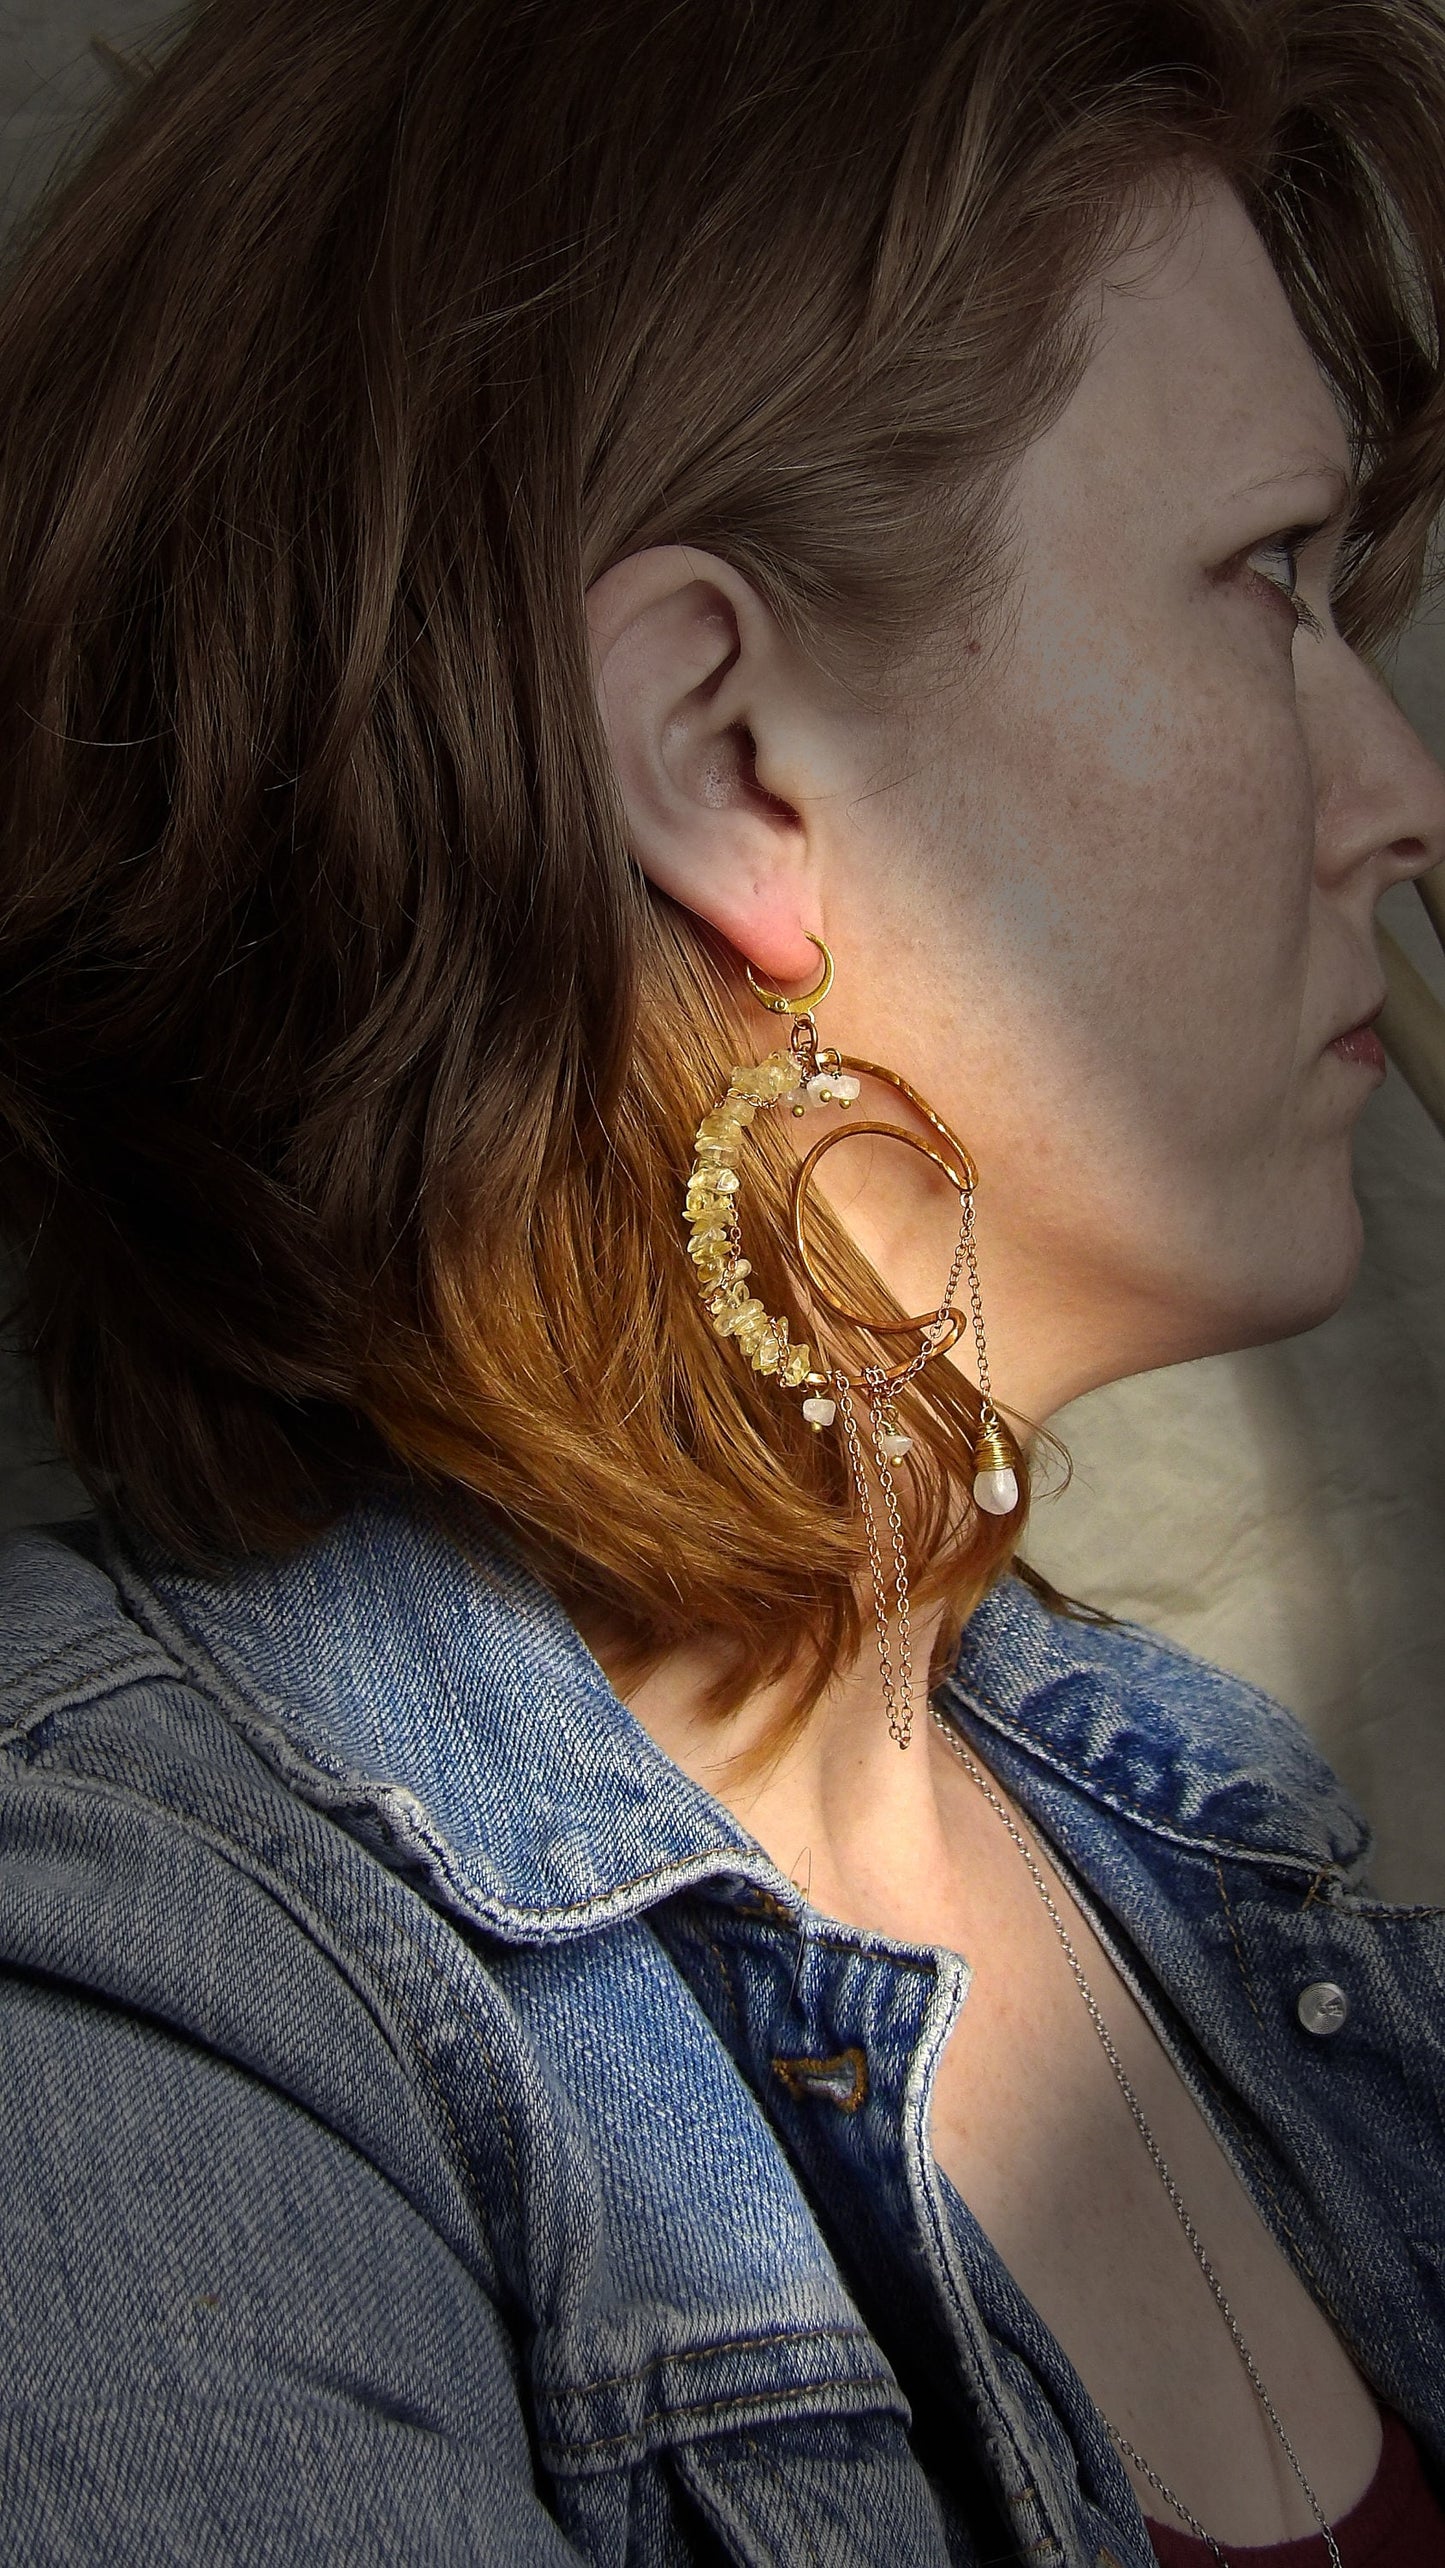 asymmetrical moon earrings - crescent moon earrings - hammered copper earrings - bohemian jewelry - goddess earrings - moonstone earrings - citrine earrings -festival outfit